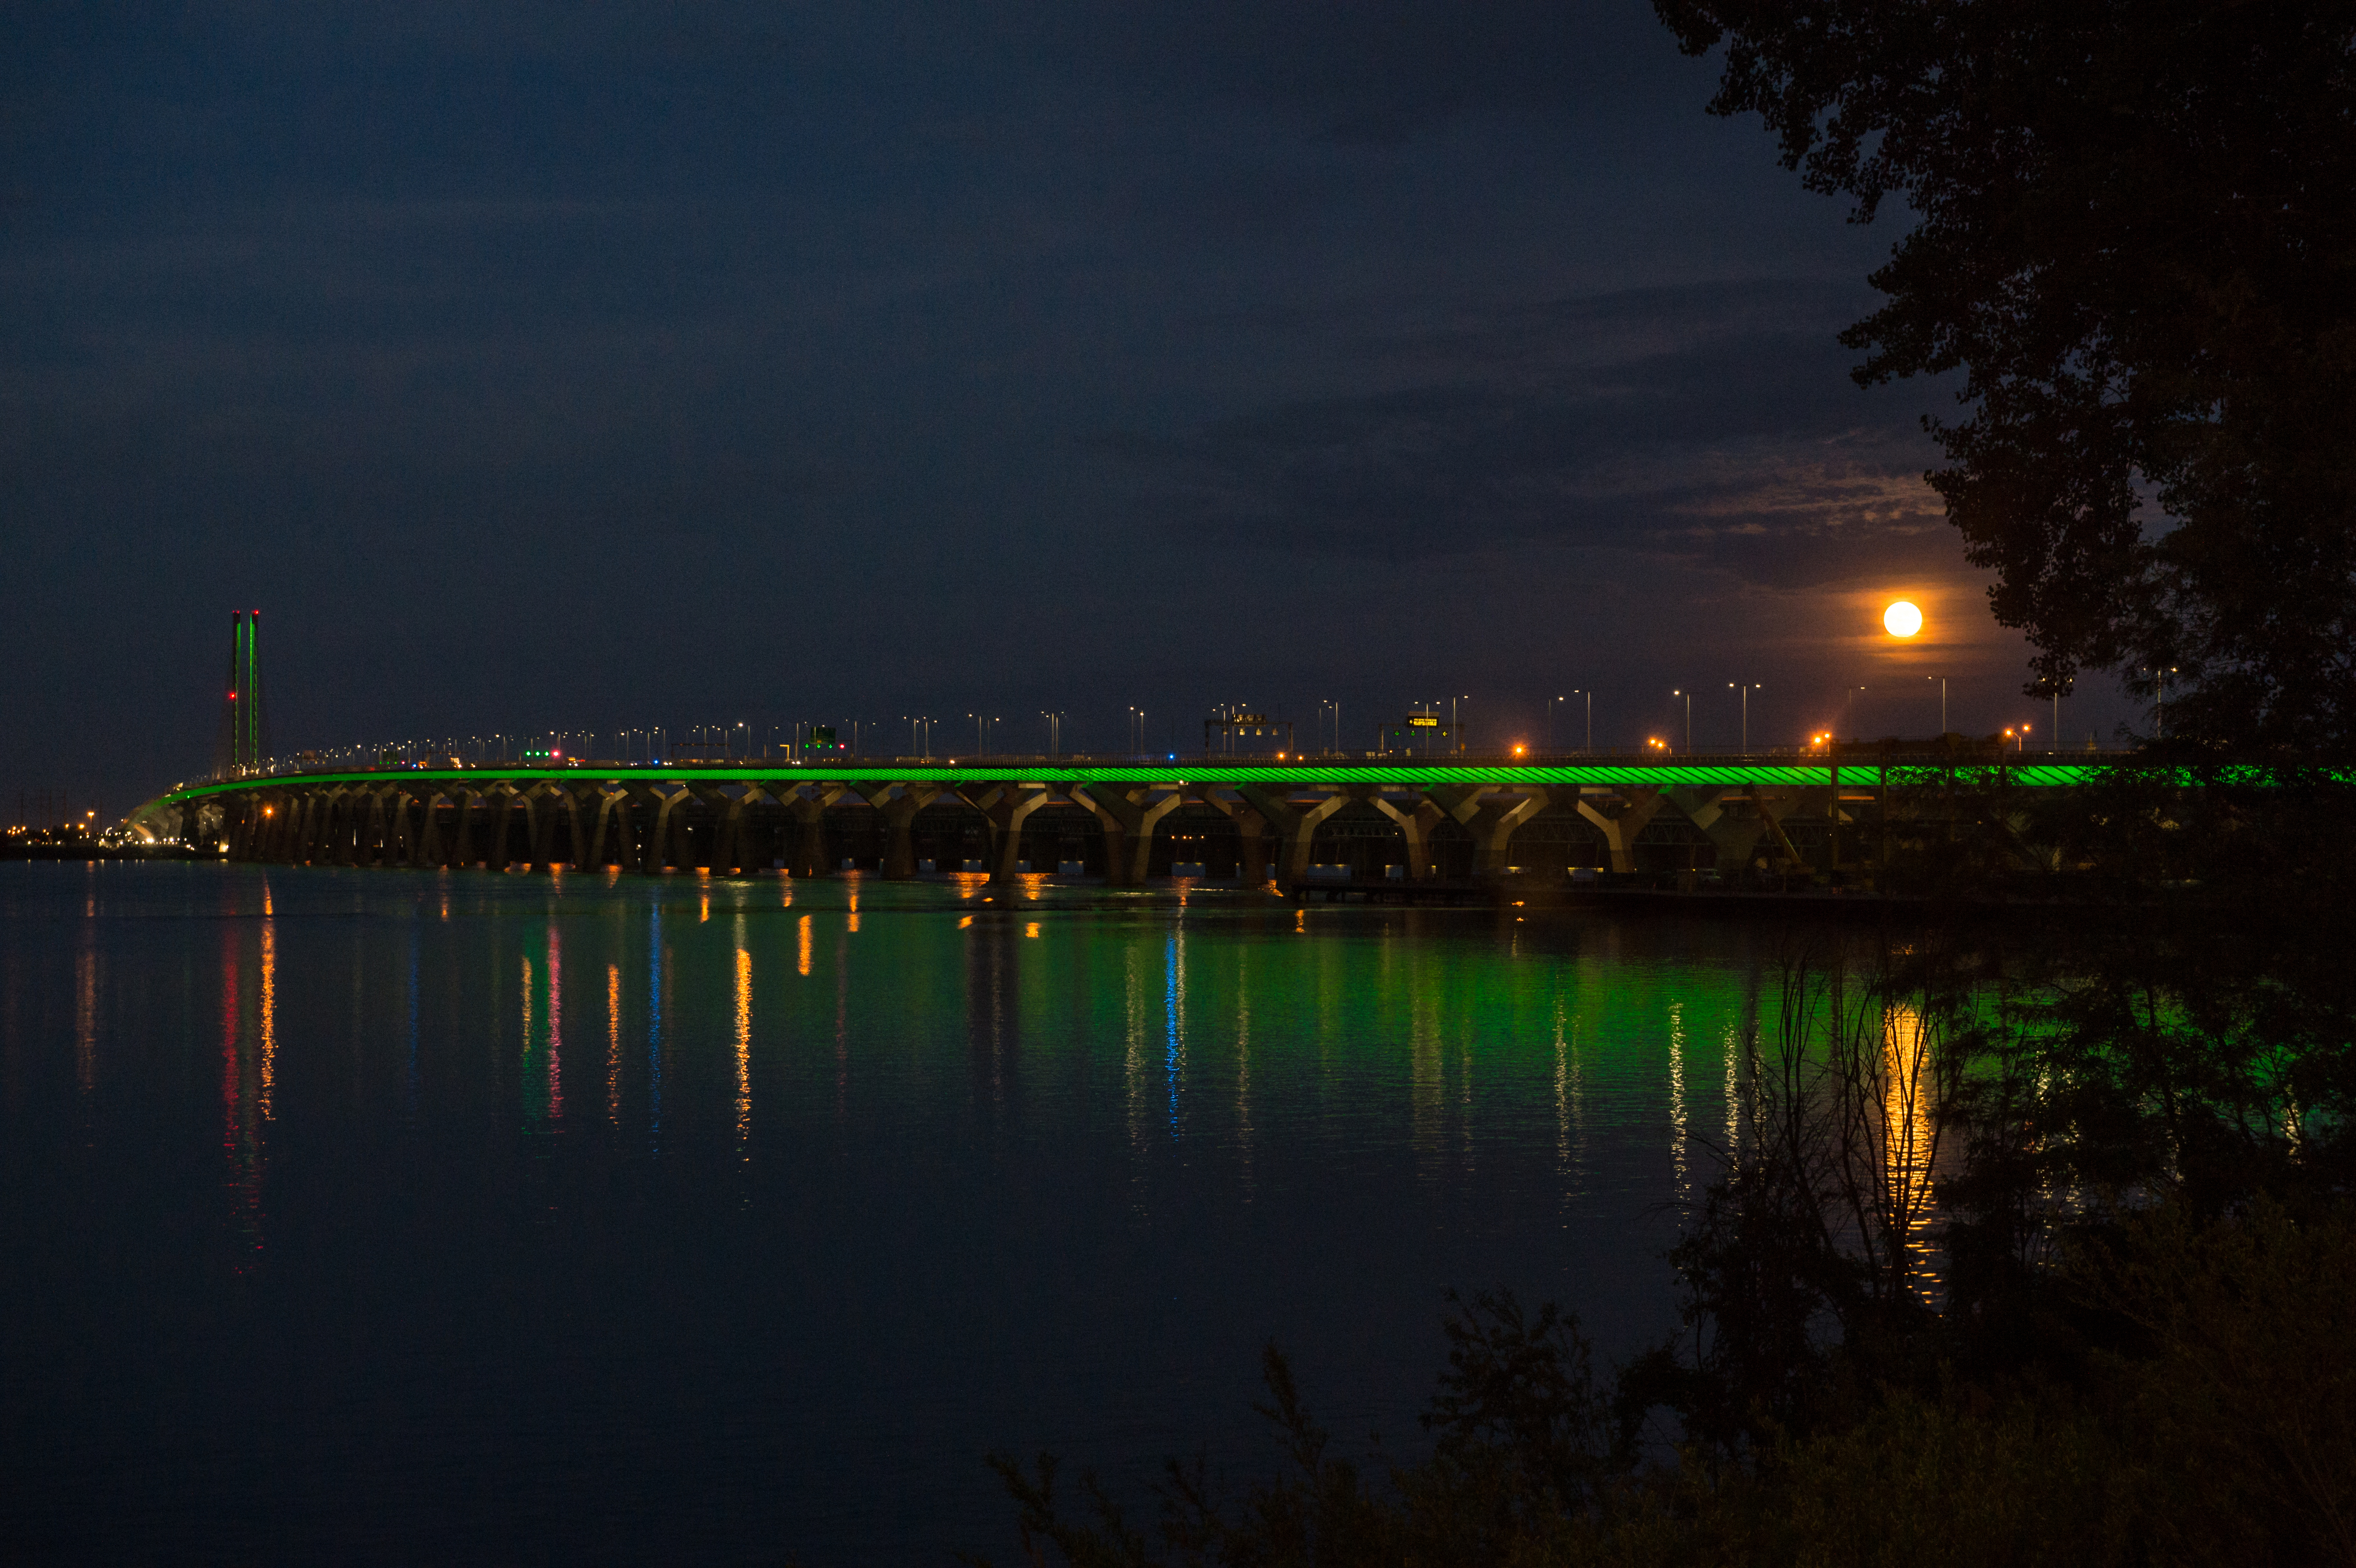 Le pont Samuel-De Champlain illuminé en vert pour la Journée mondiale de l’environnement, le 5 juin 2020